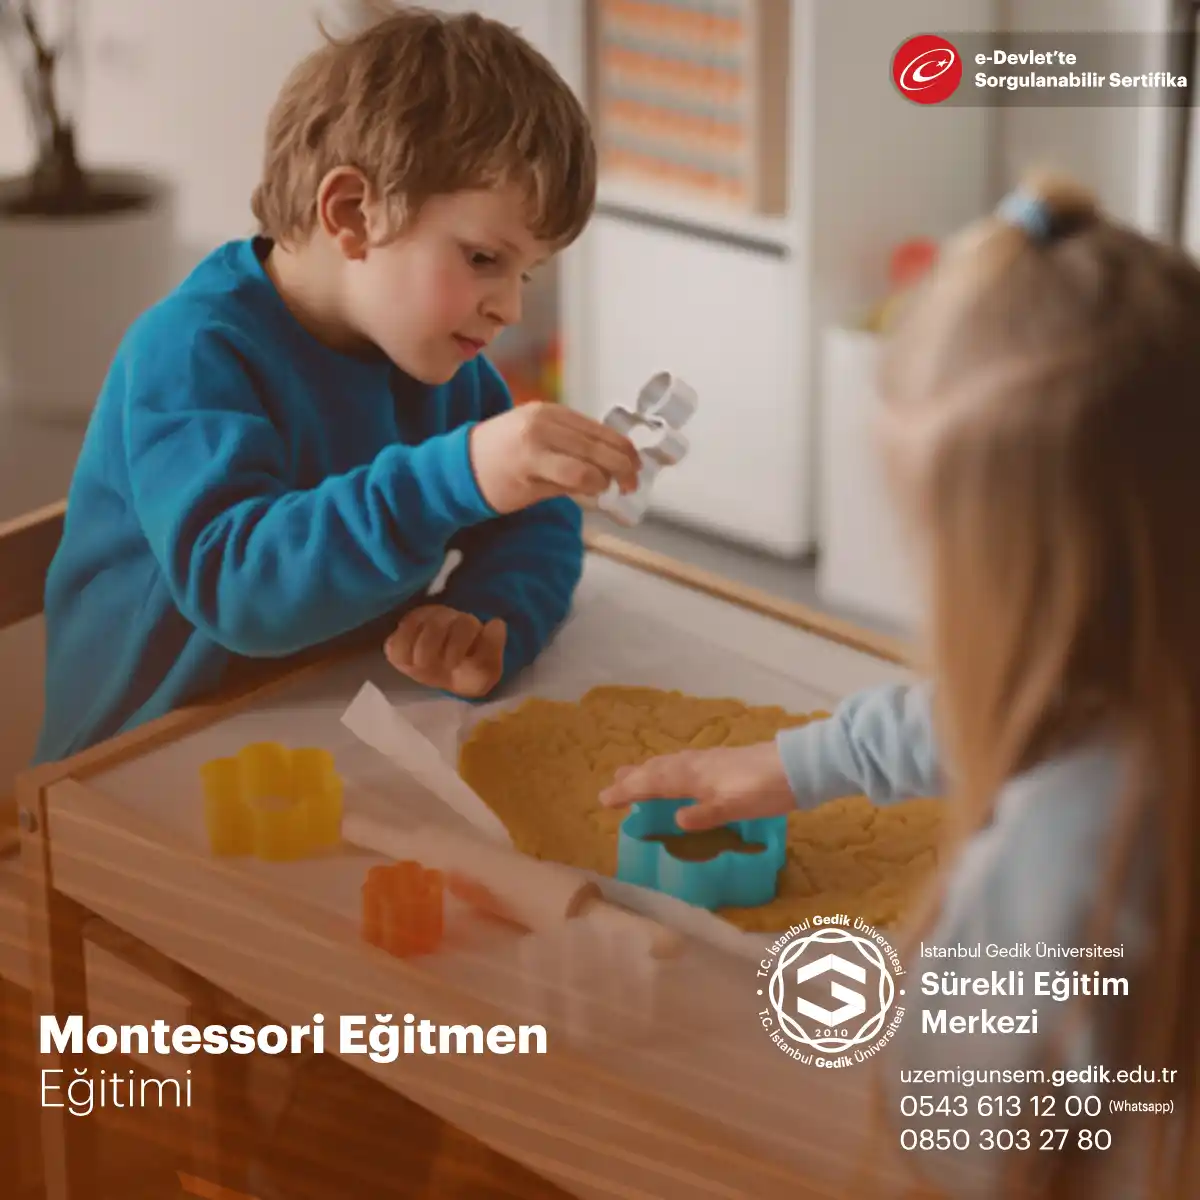 Montessori Eğitmen Eğitimi (Uygulayıcı Belge)